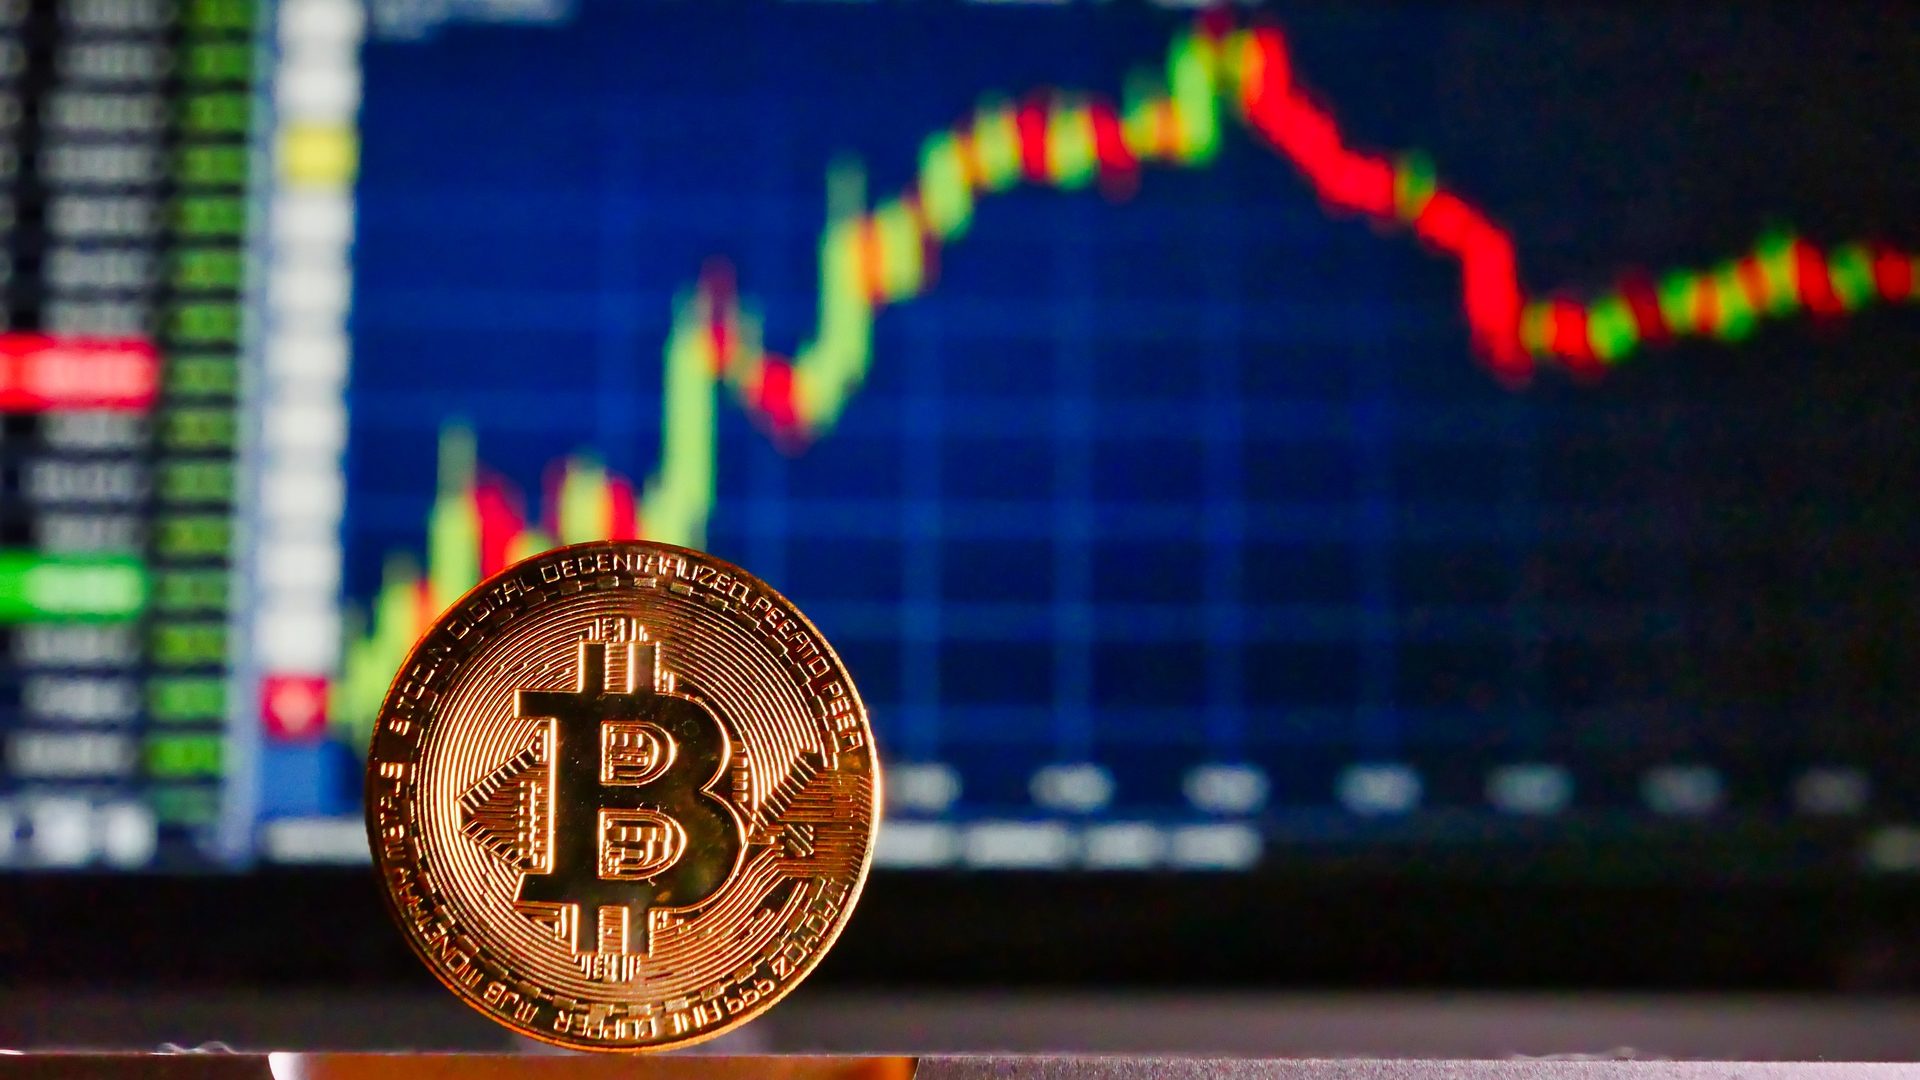 Empresas deixam de investir em bitcoin devido à insegurança, diz pesquisa | Finanças